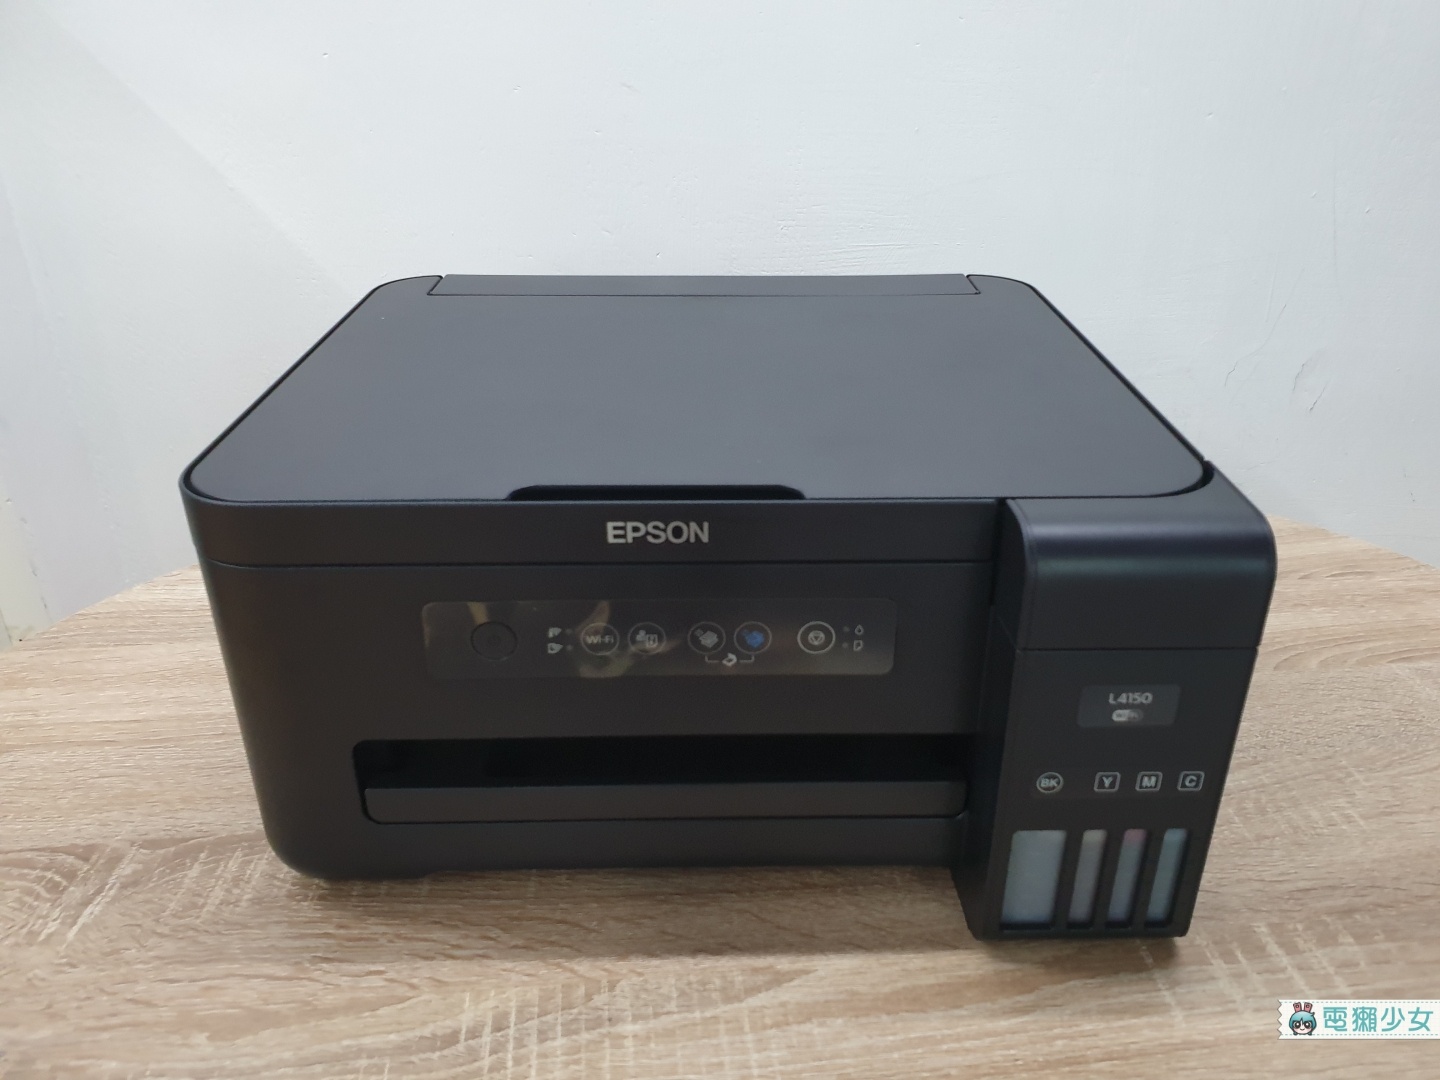 開箱｜『 Epson L4150 』印表機不只可印LINE隨傳隨印照片 / 文件、呼叫SIRI列印 墨水用量還超省！